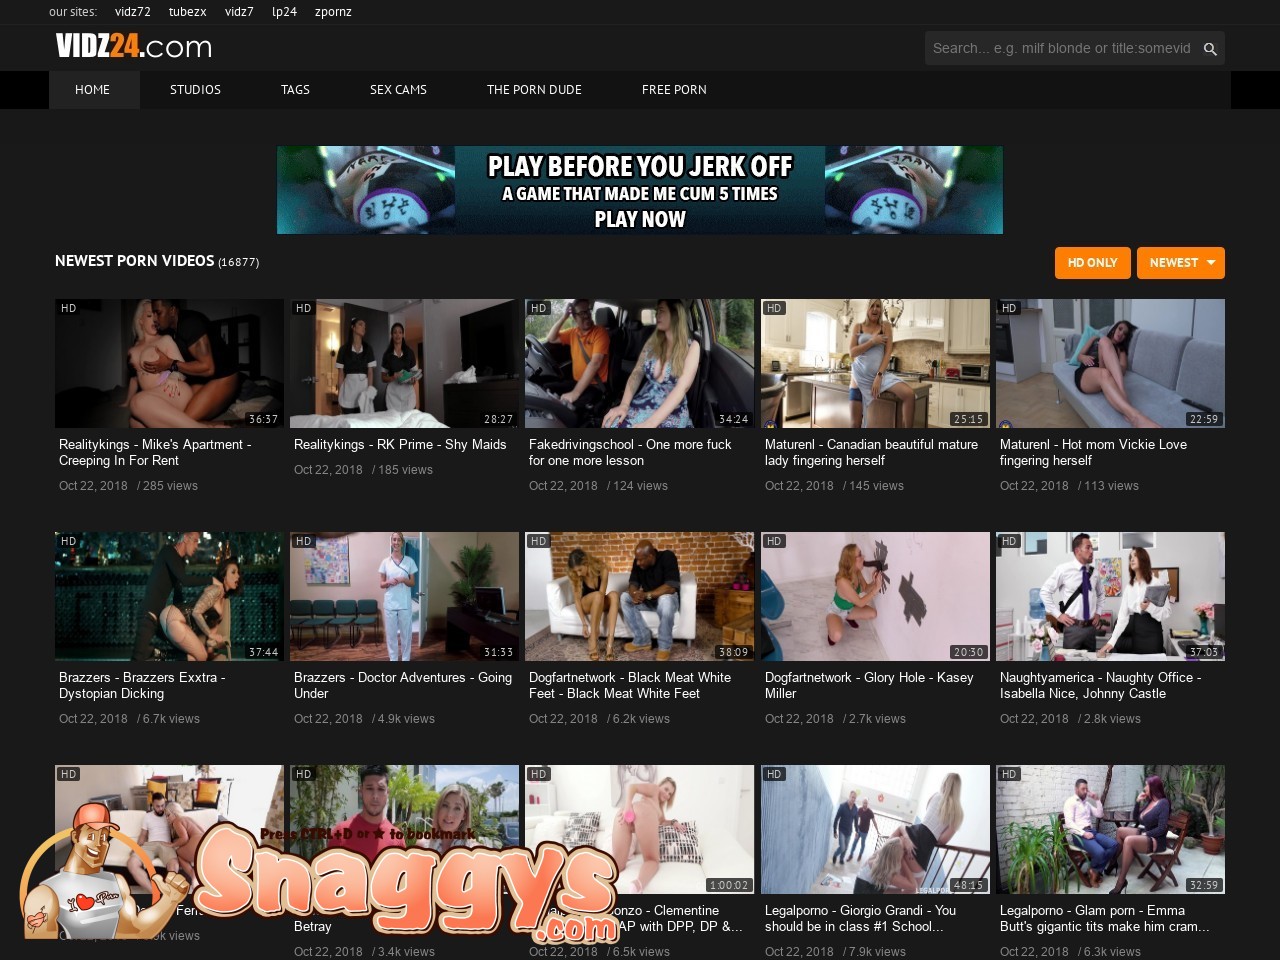 Vidz24 - Vidz24.com - Snaggys Best Porn Sites